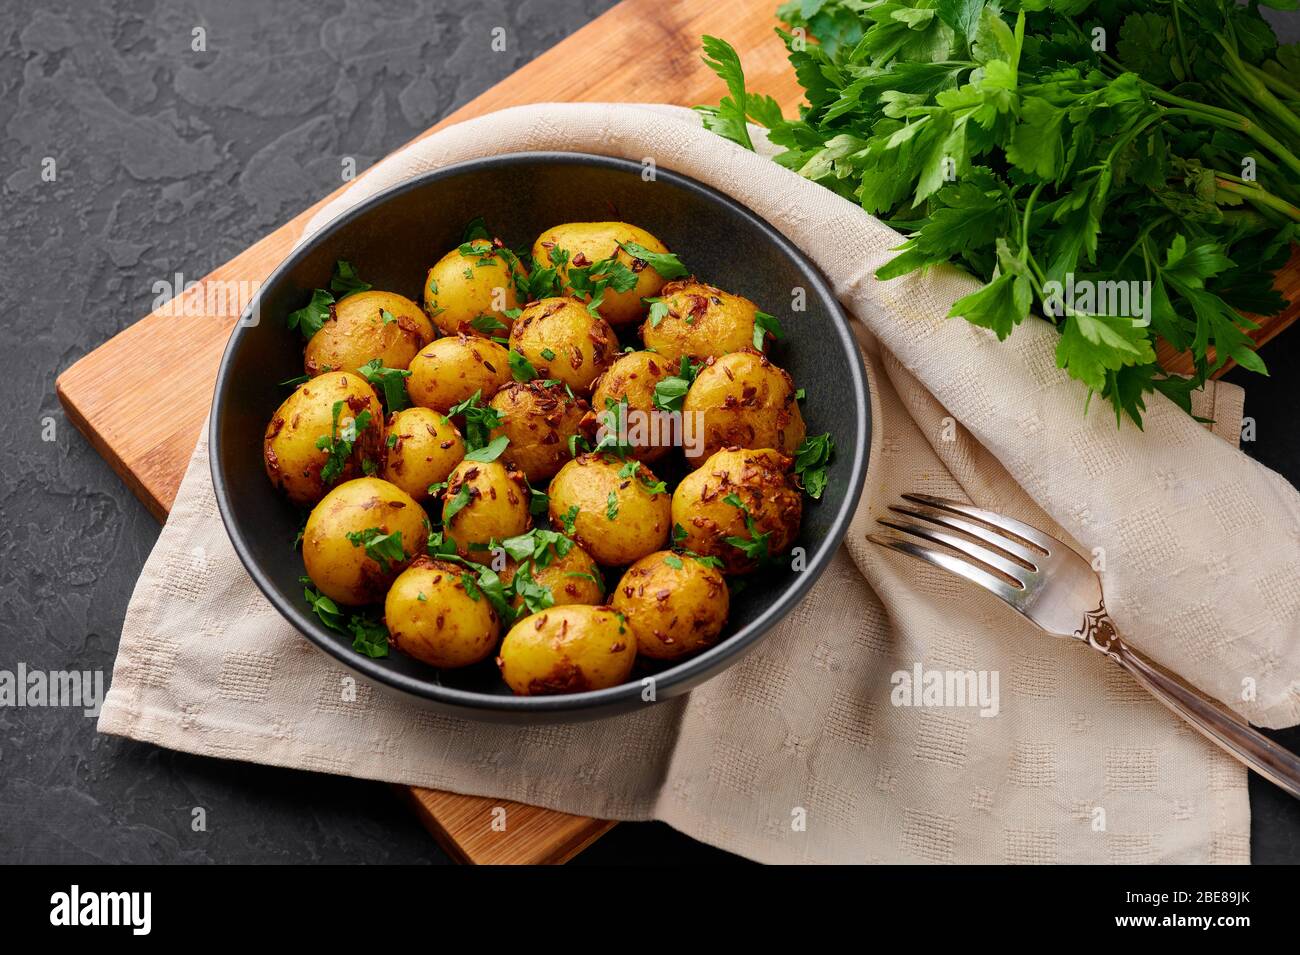 Jeera Aloo in schwarzer Schale auf dunklem Schiefergrund. Jeera Aloo ist ein Gericht der indischen Küche mit Babykartoffeln, Jeera-Samen und Koriander. Stockfoto